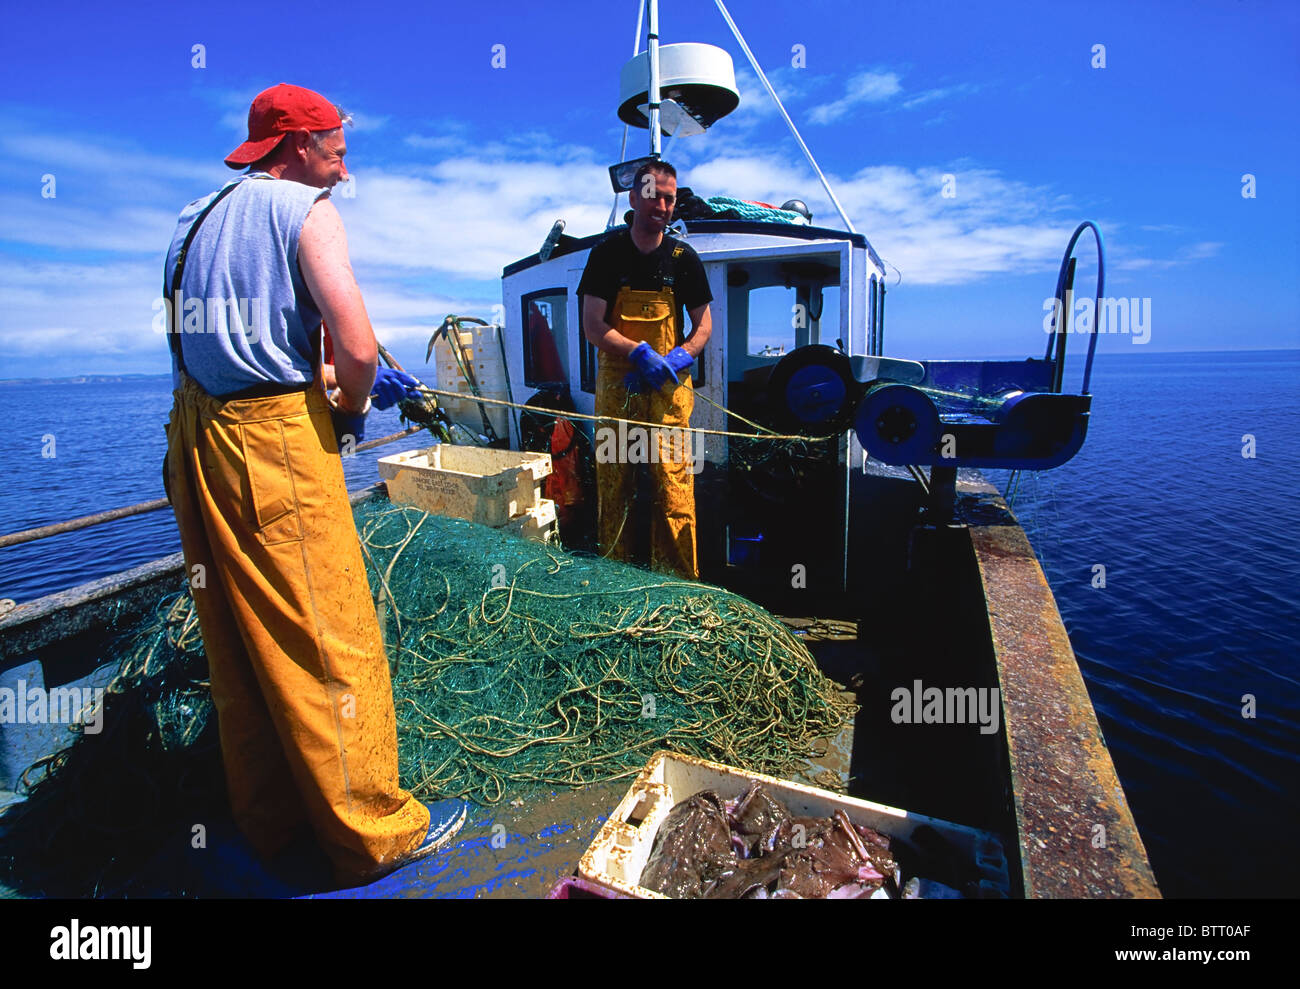 Inshore Fishermen, Catching Monk Fish, Co Waterford, Ireland Stock Photo